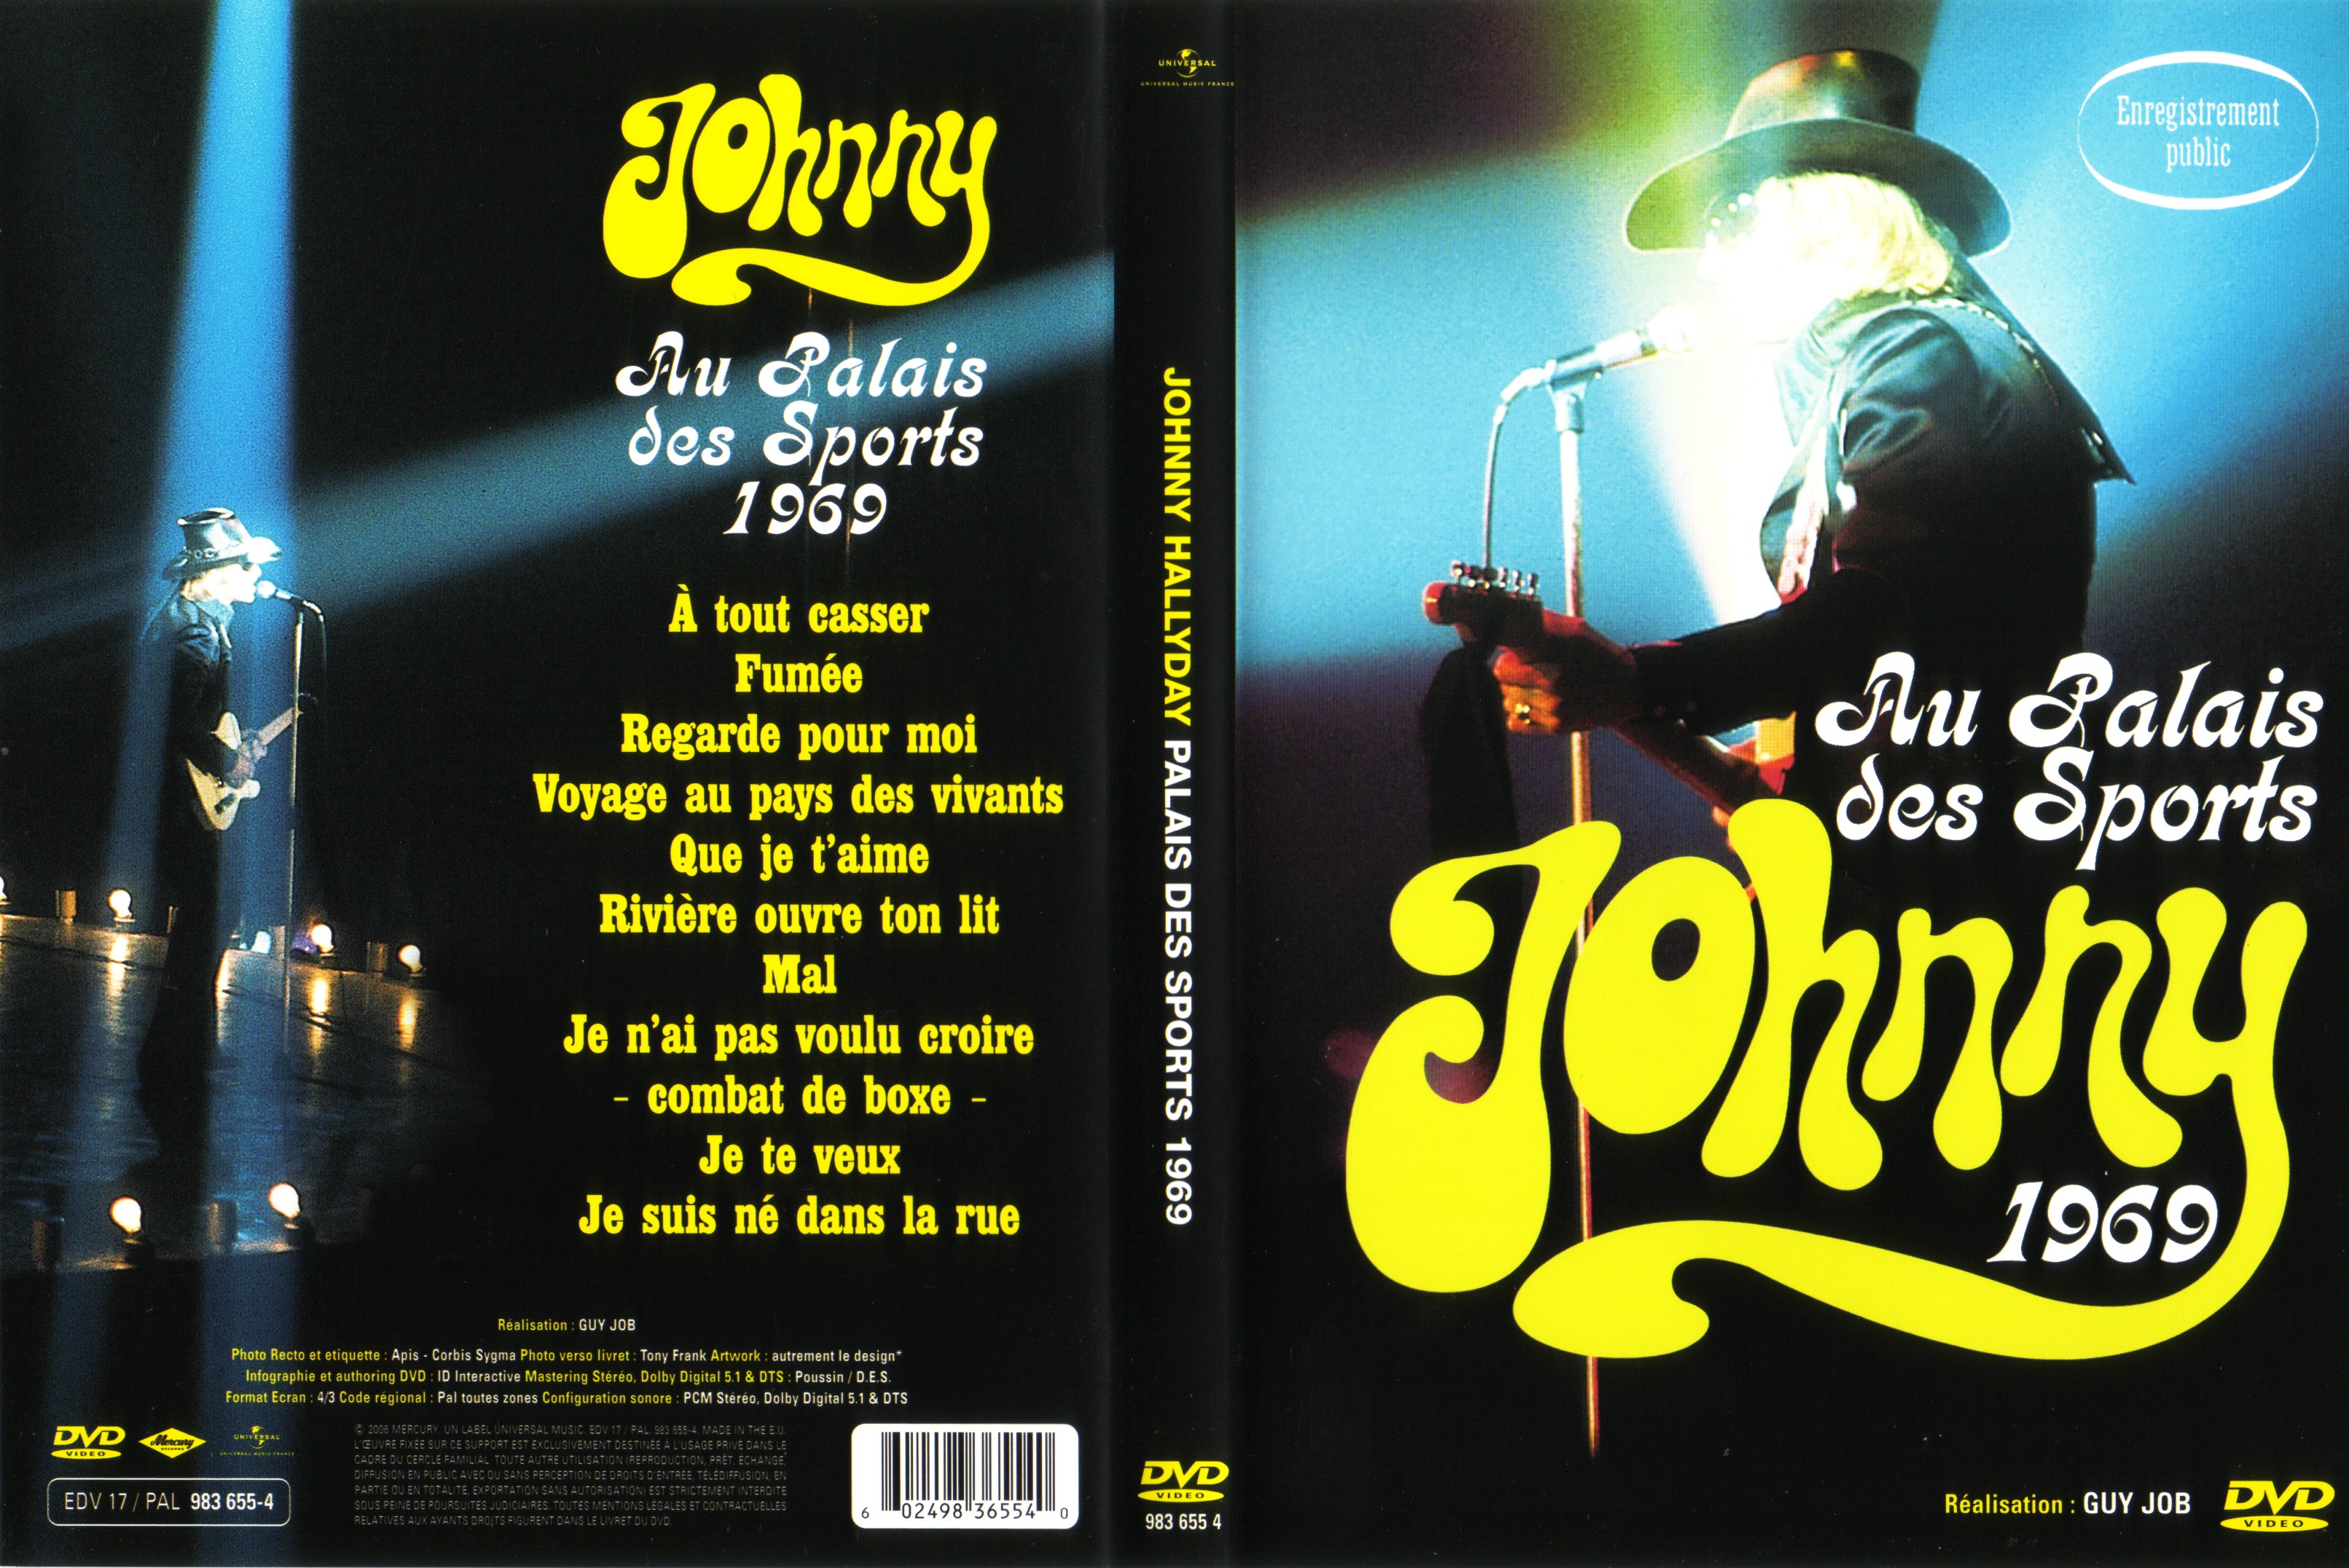 Jaquette DVD Johnny Hallyday au palais des sports 1969